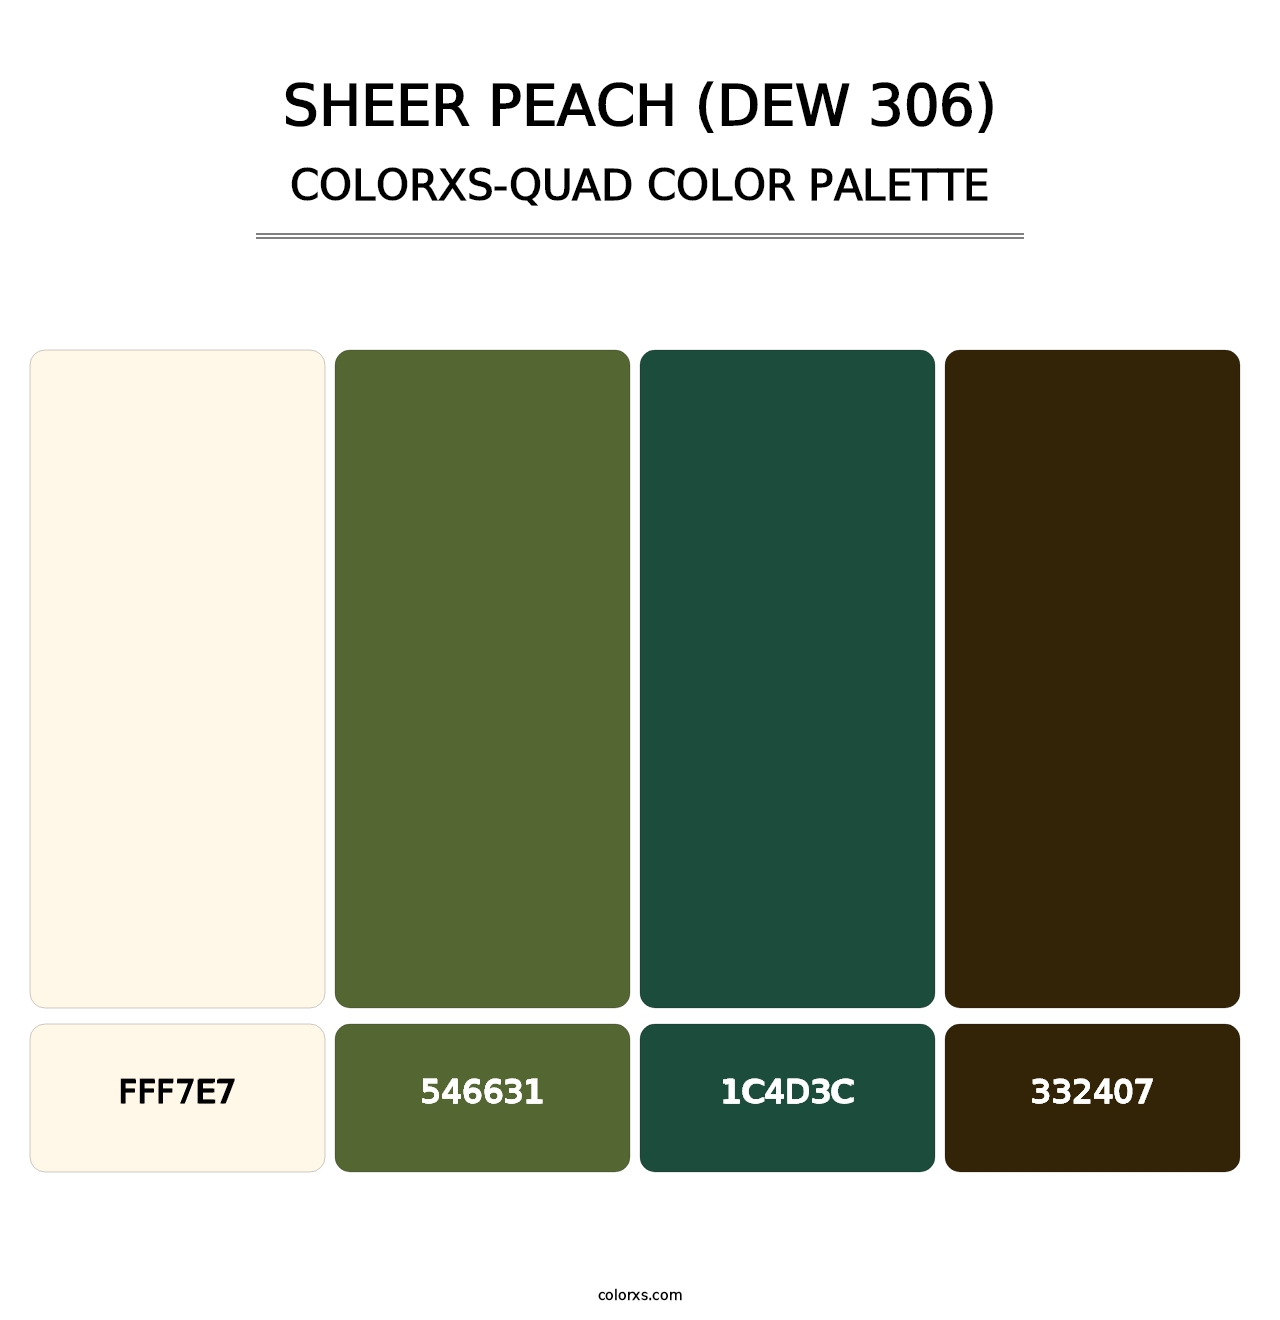 Sheer Peach (DEW 306) - Colorxs Quad Palette